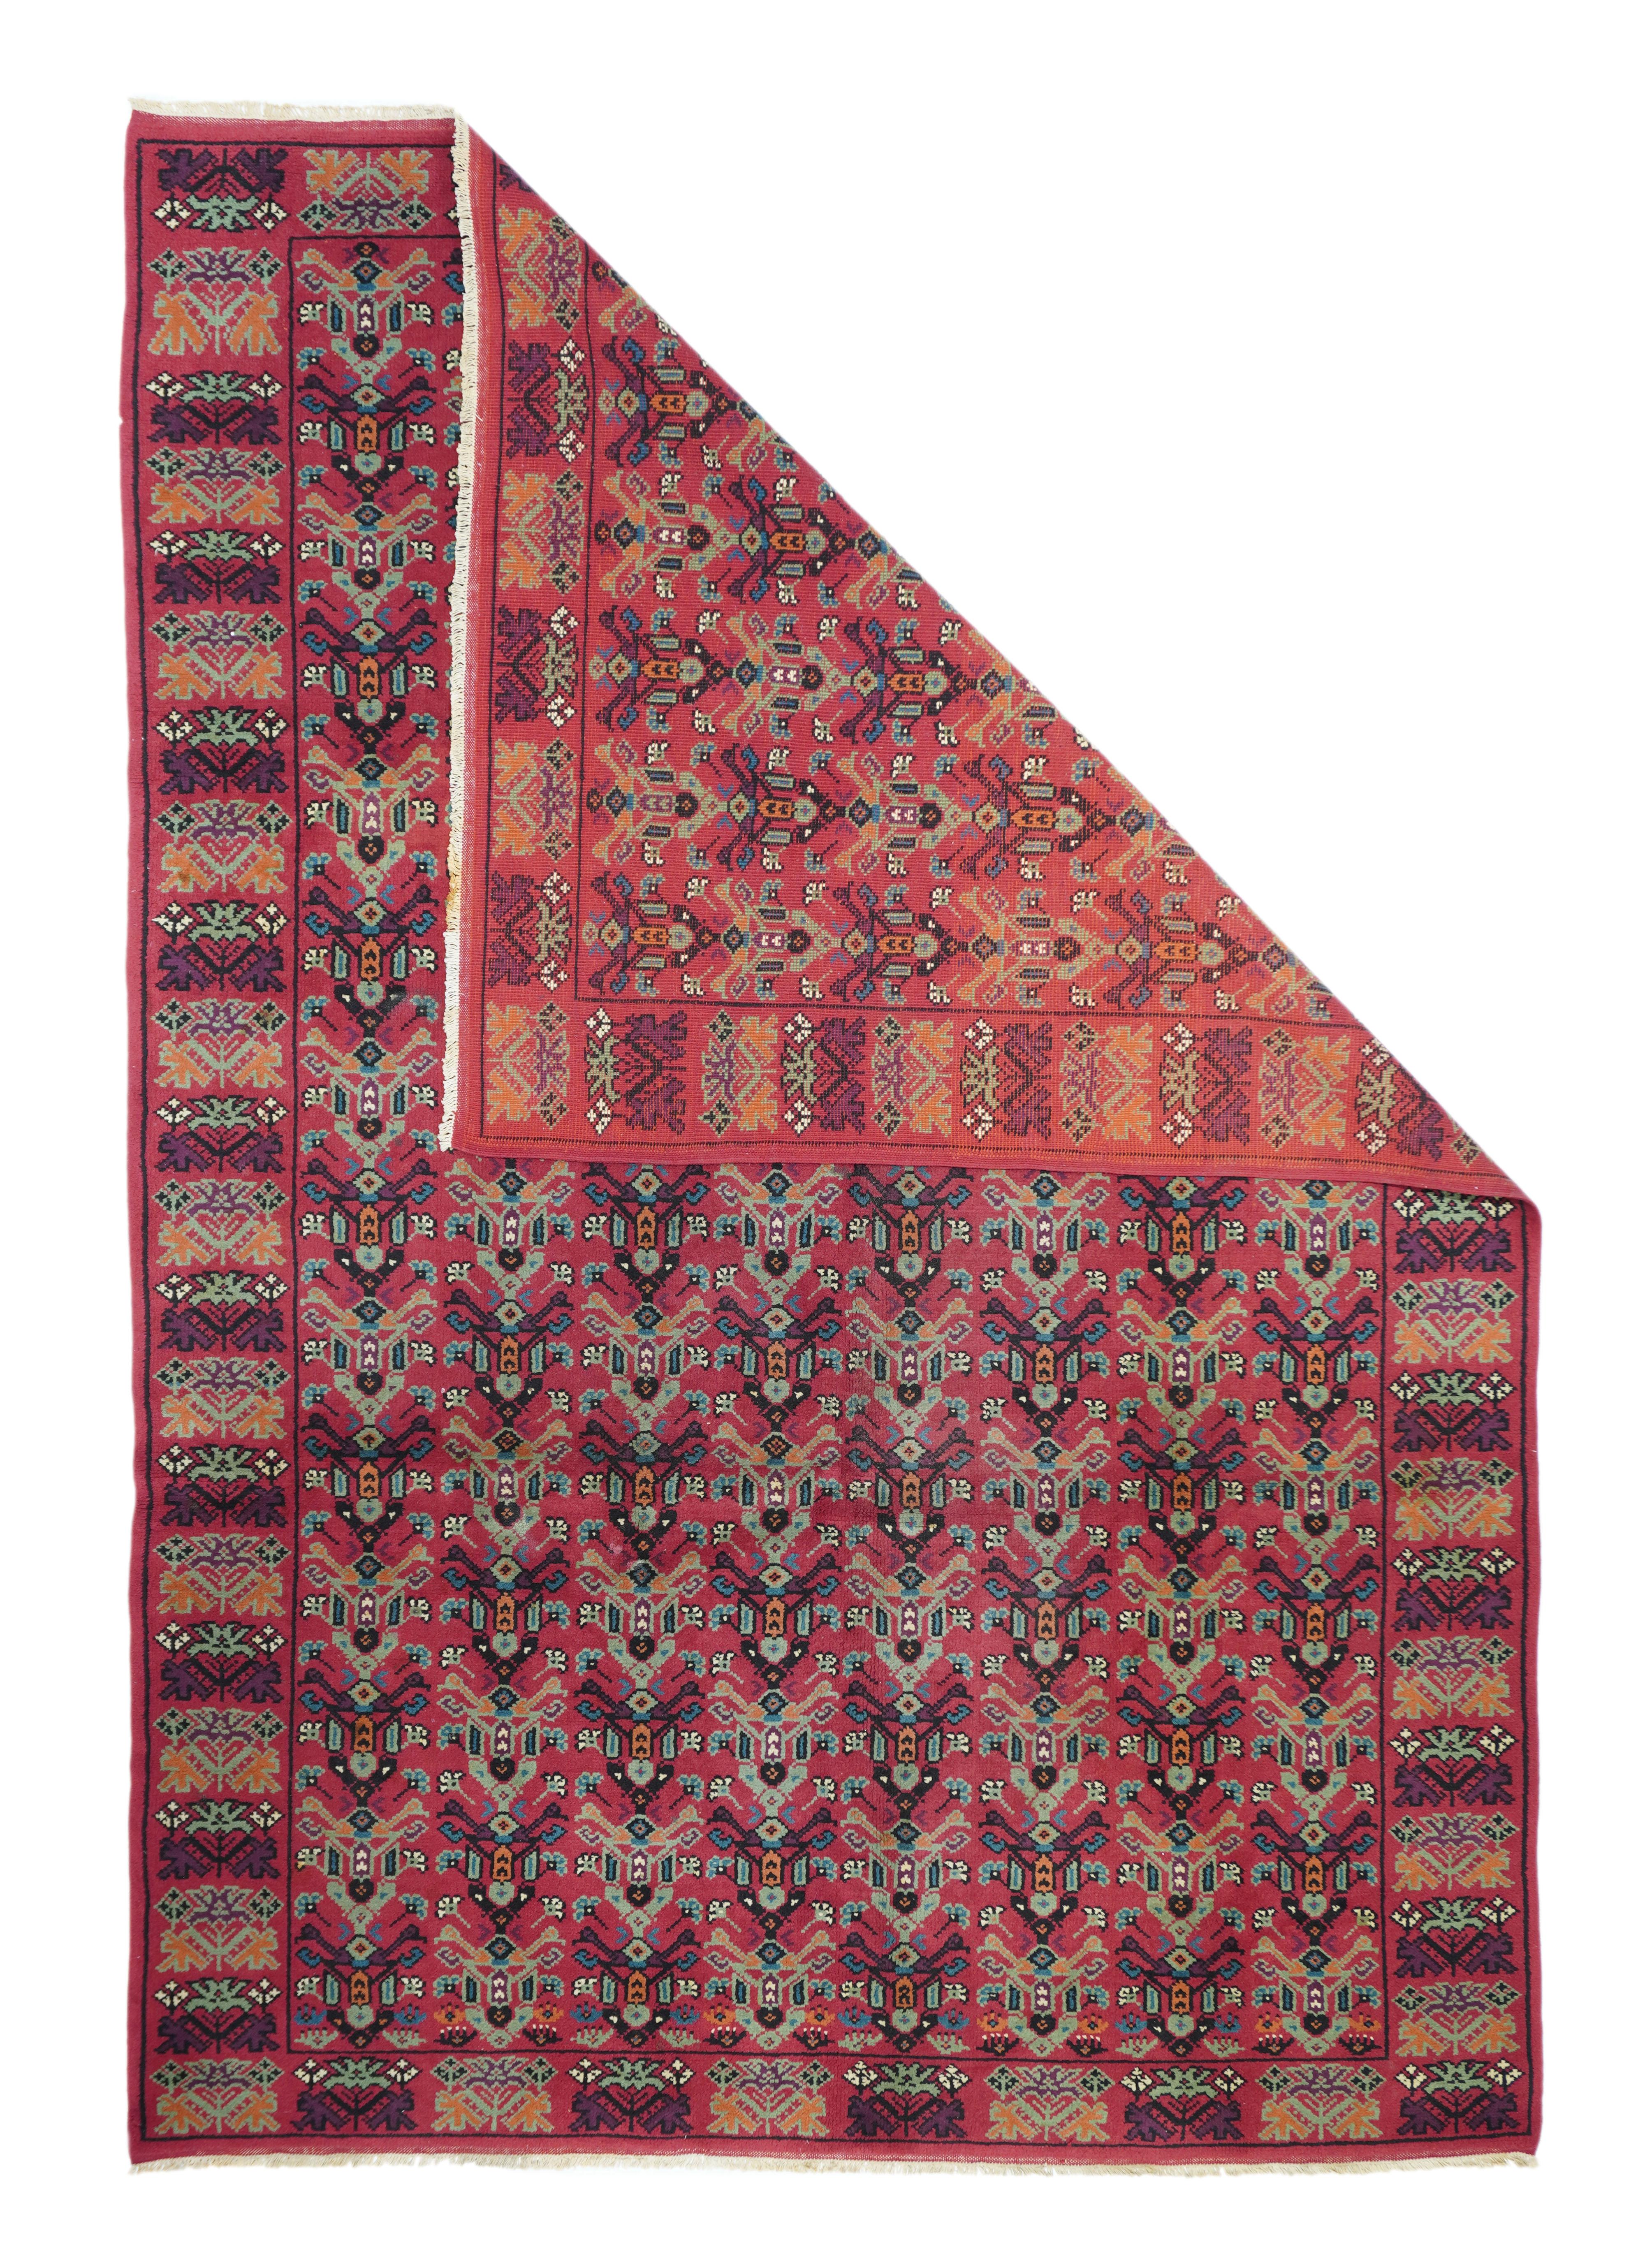 Vintage European rug measures 6'6'' x 9'8''.